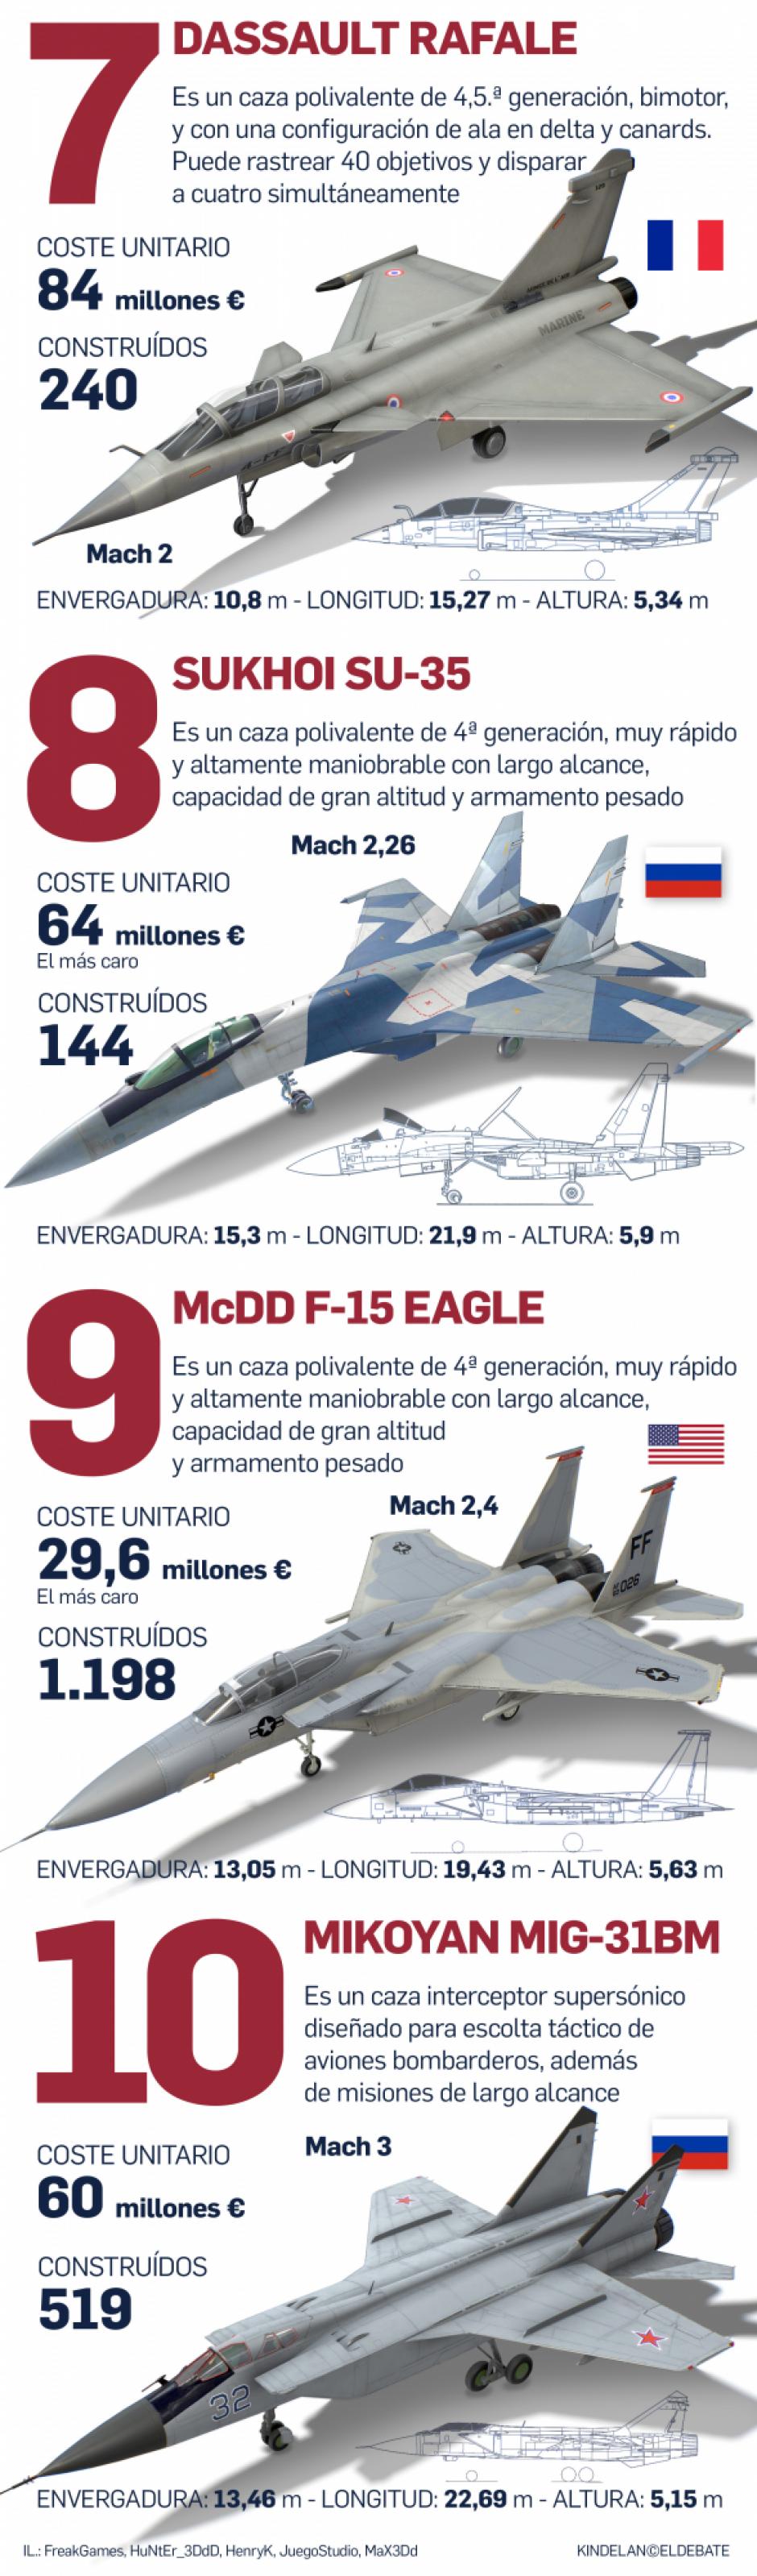 Los diez mejores aviones de combate